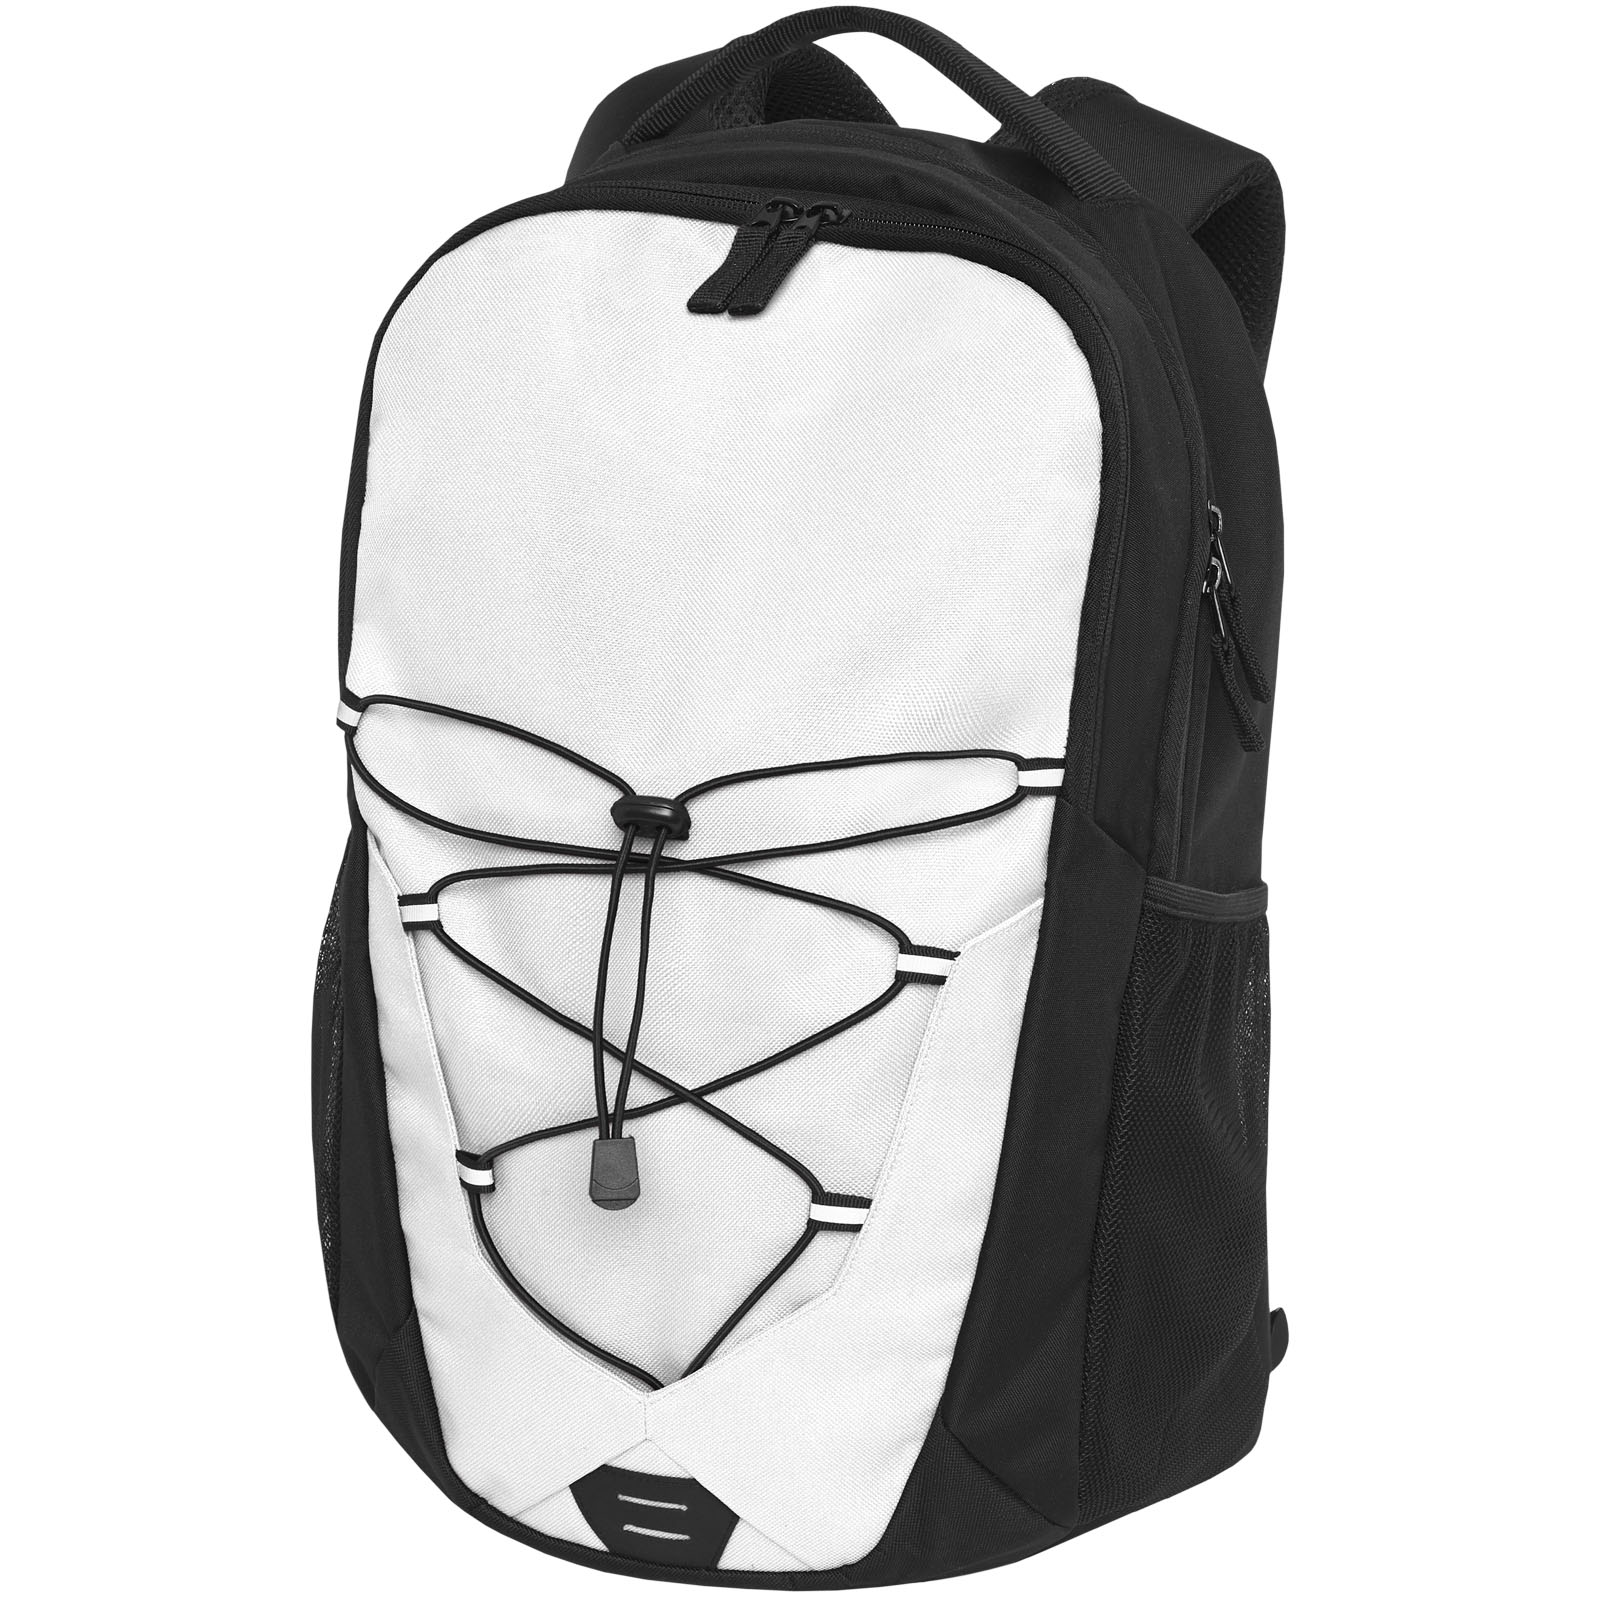 Advertising Laptop Backpacks - Trails backpack 24L